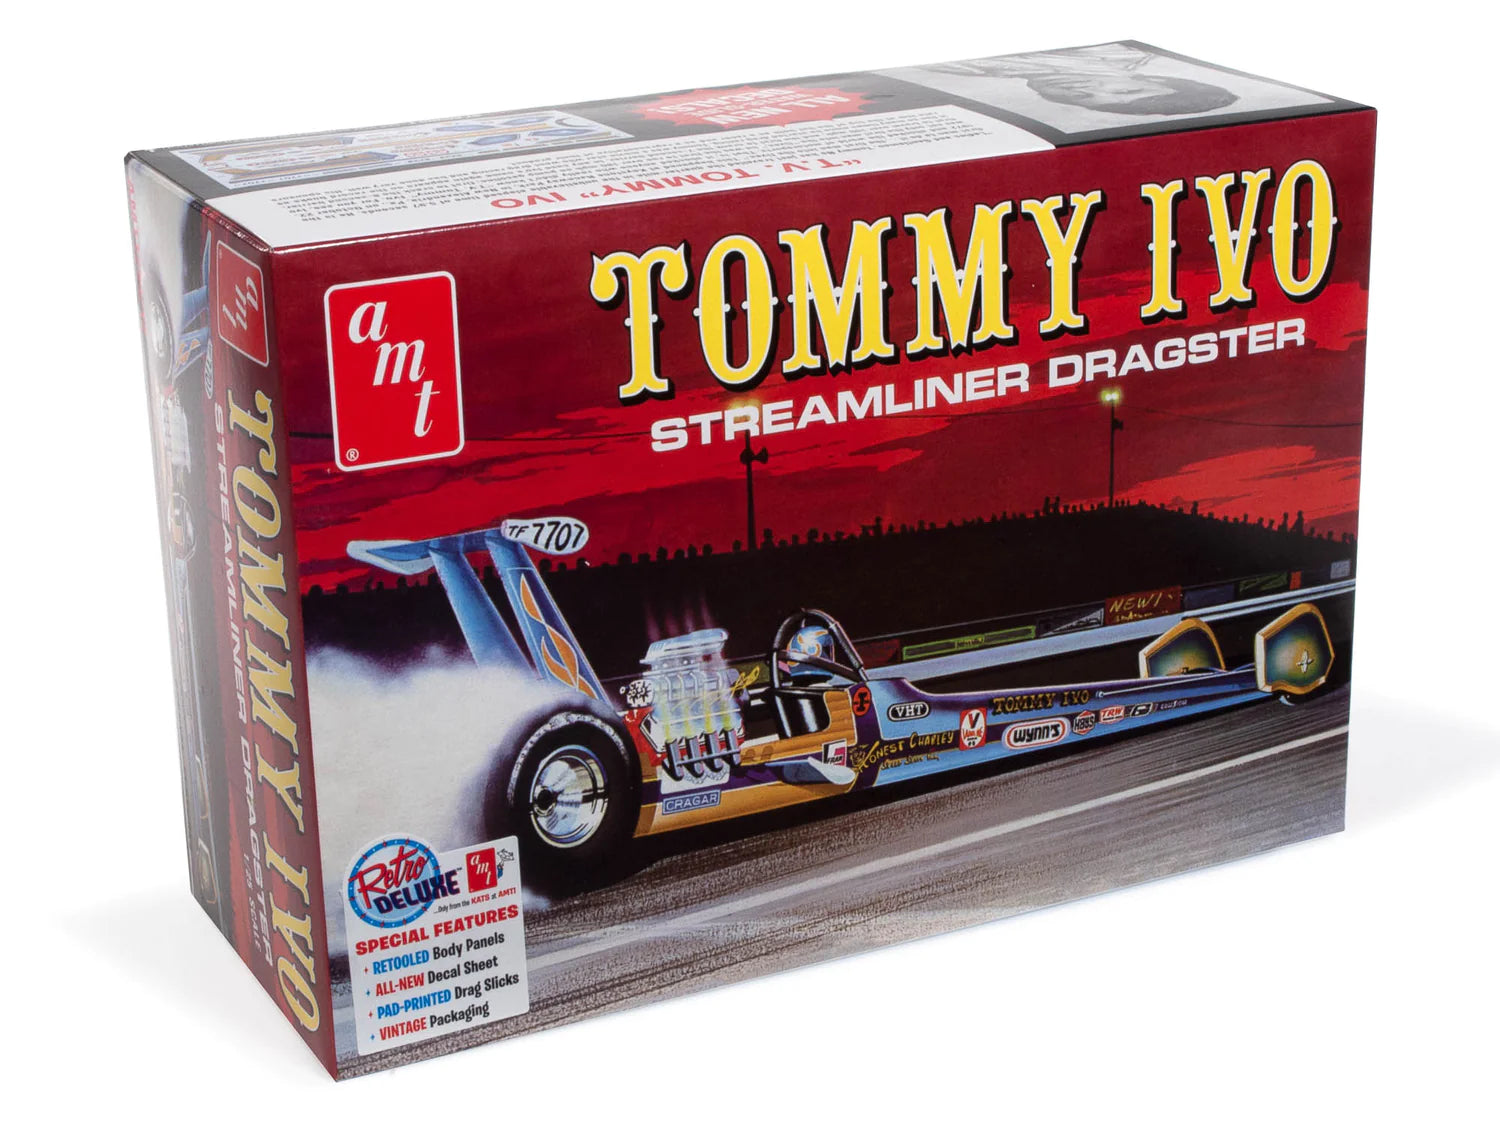 AMT1254 - 1:25 Tommy Ivo Streamliner Dragster